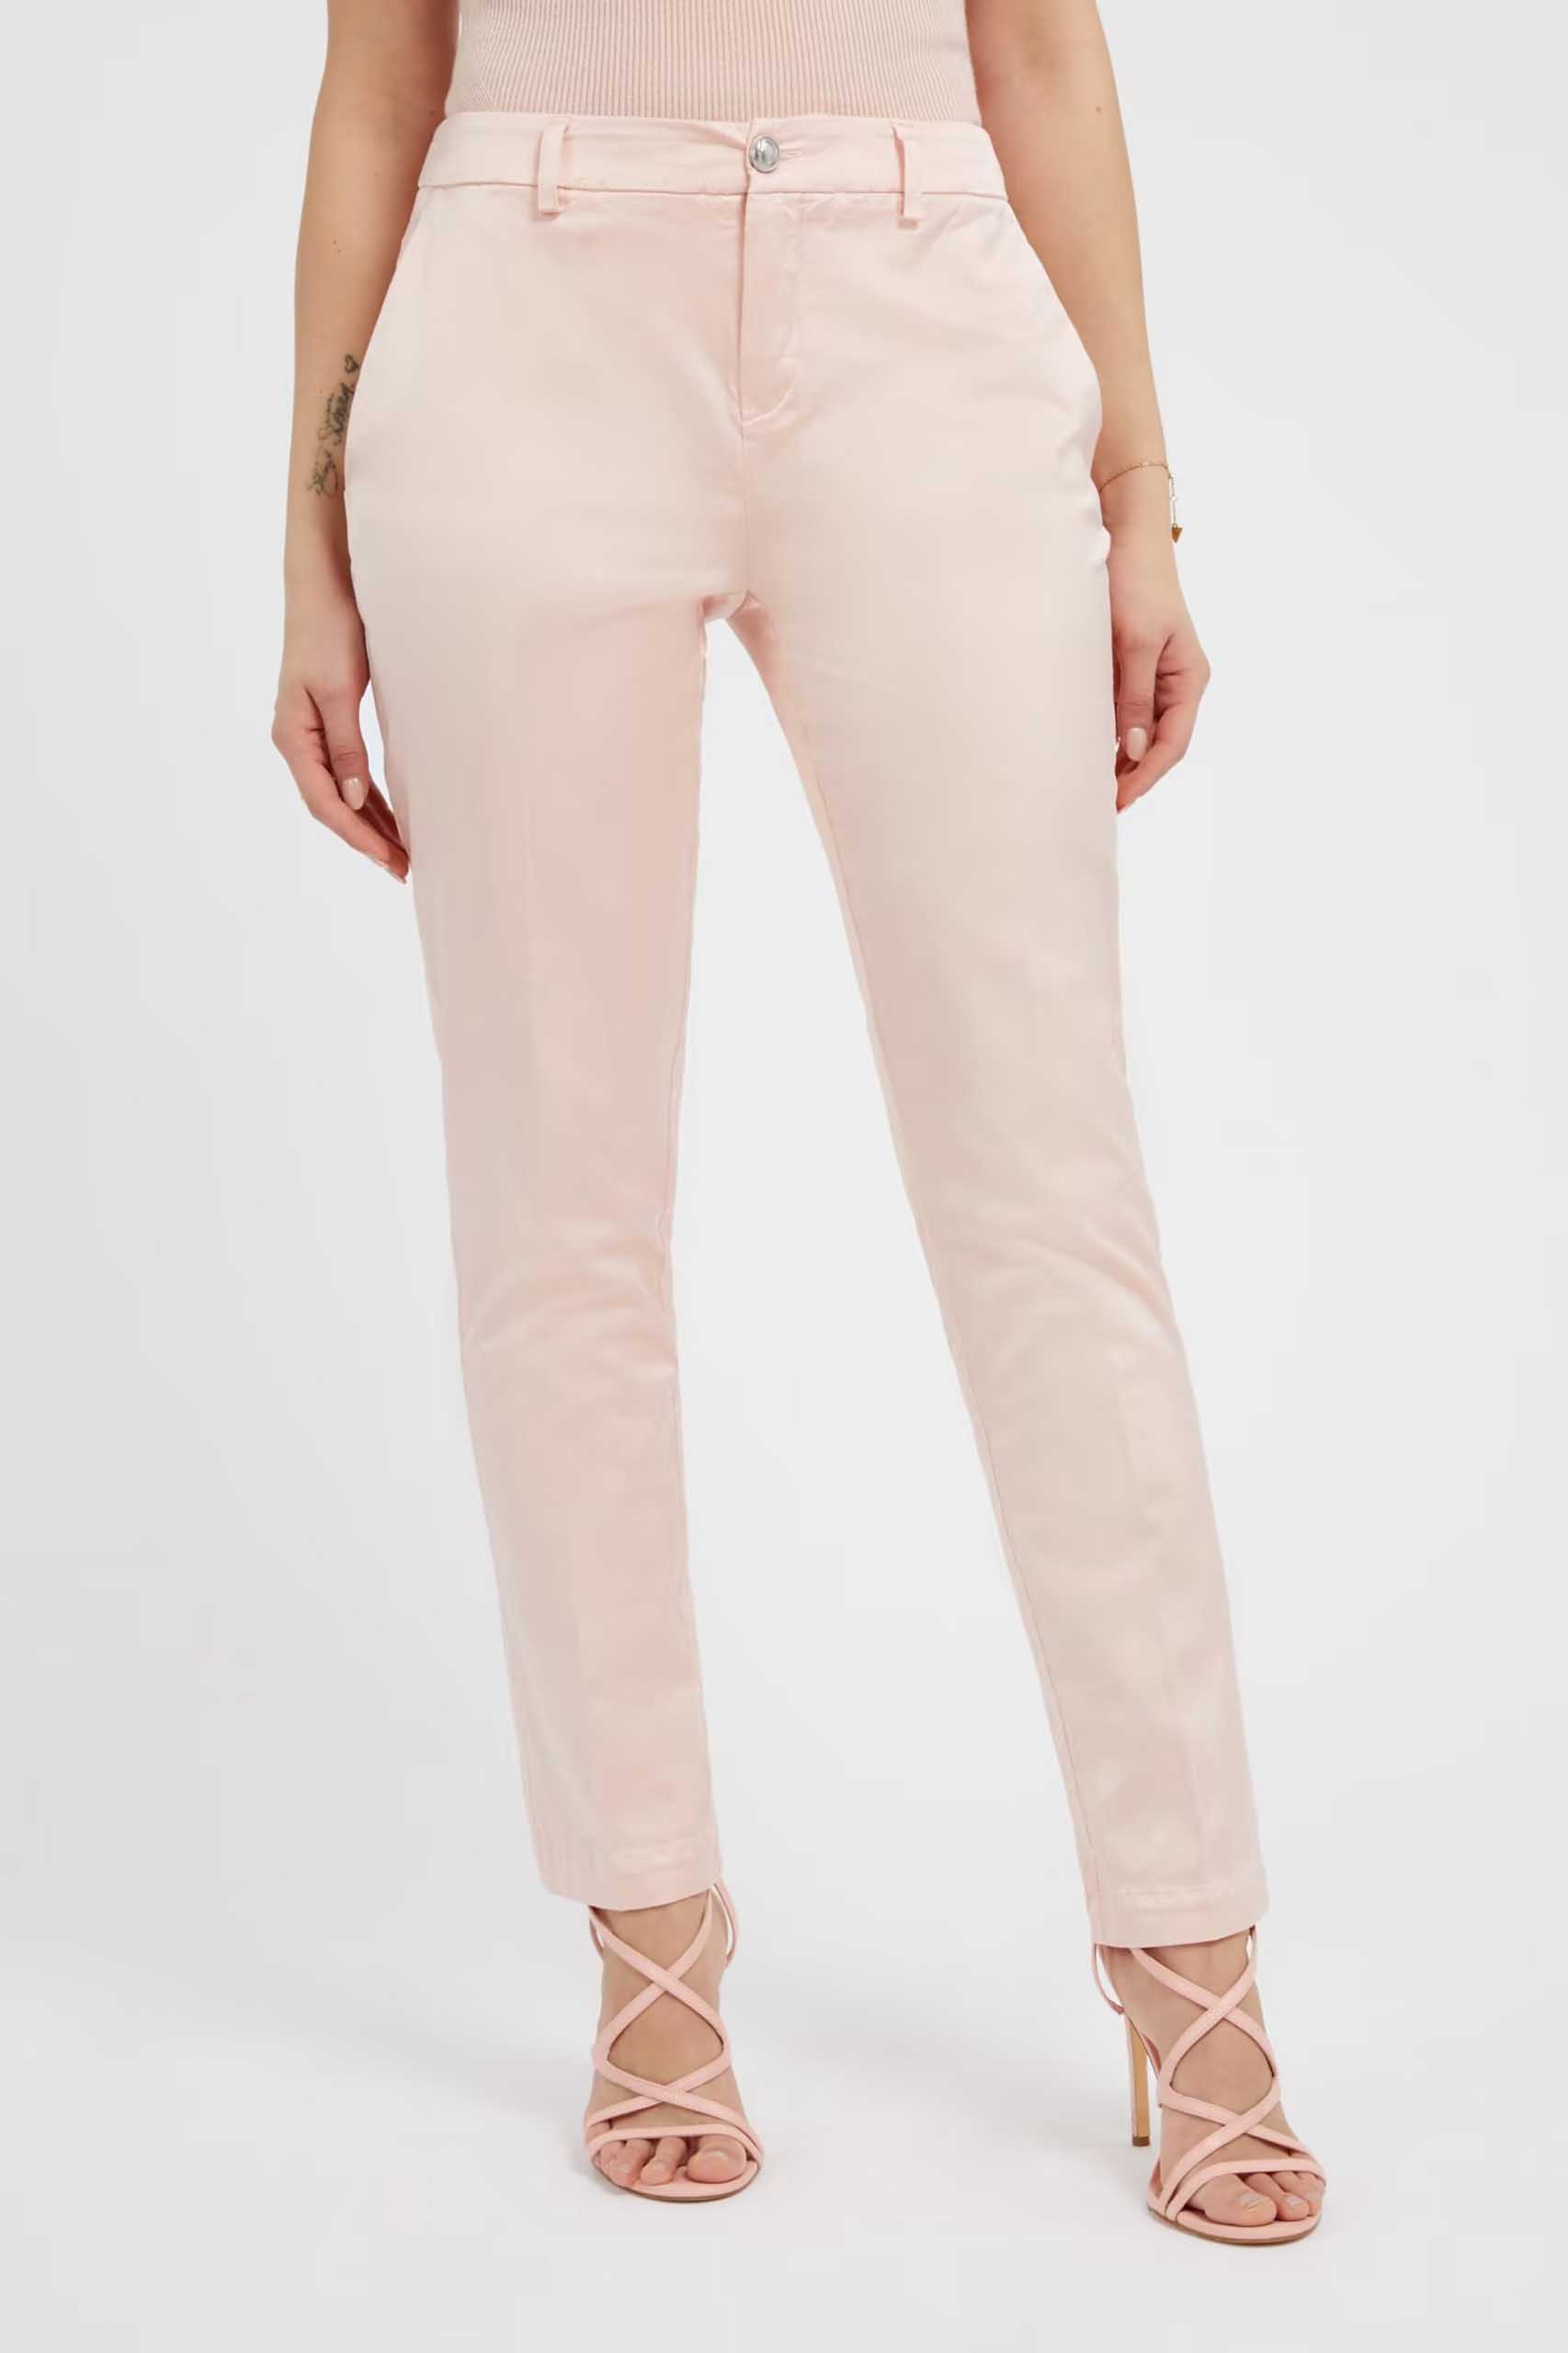 Pantalón de la marca Guess Jeans Rosa